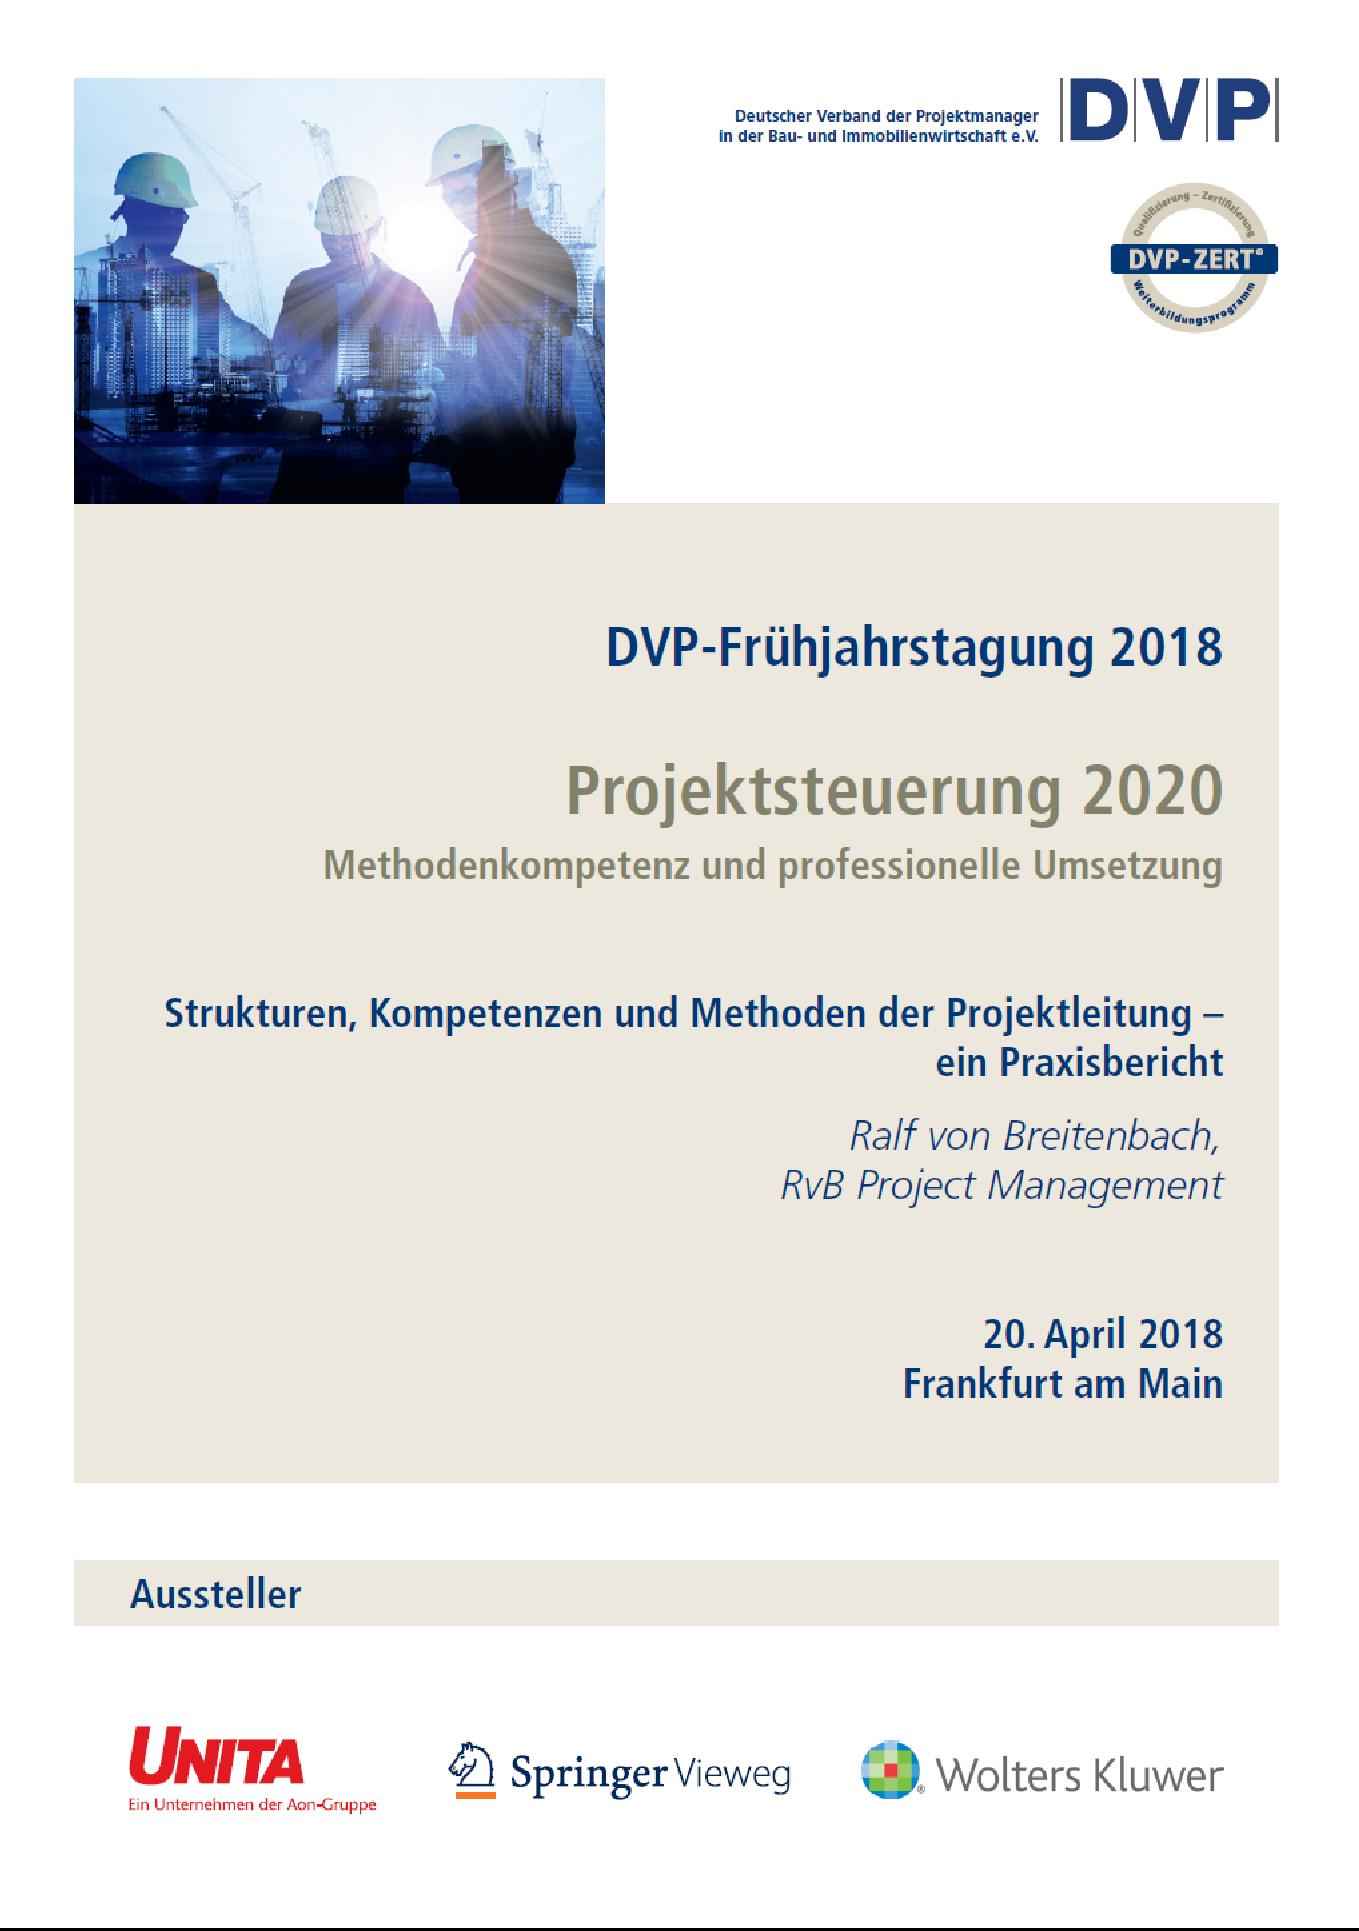 DVP-Fruehjahrstagung von Breitenbach